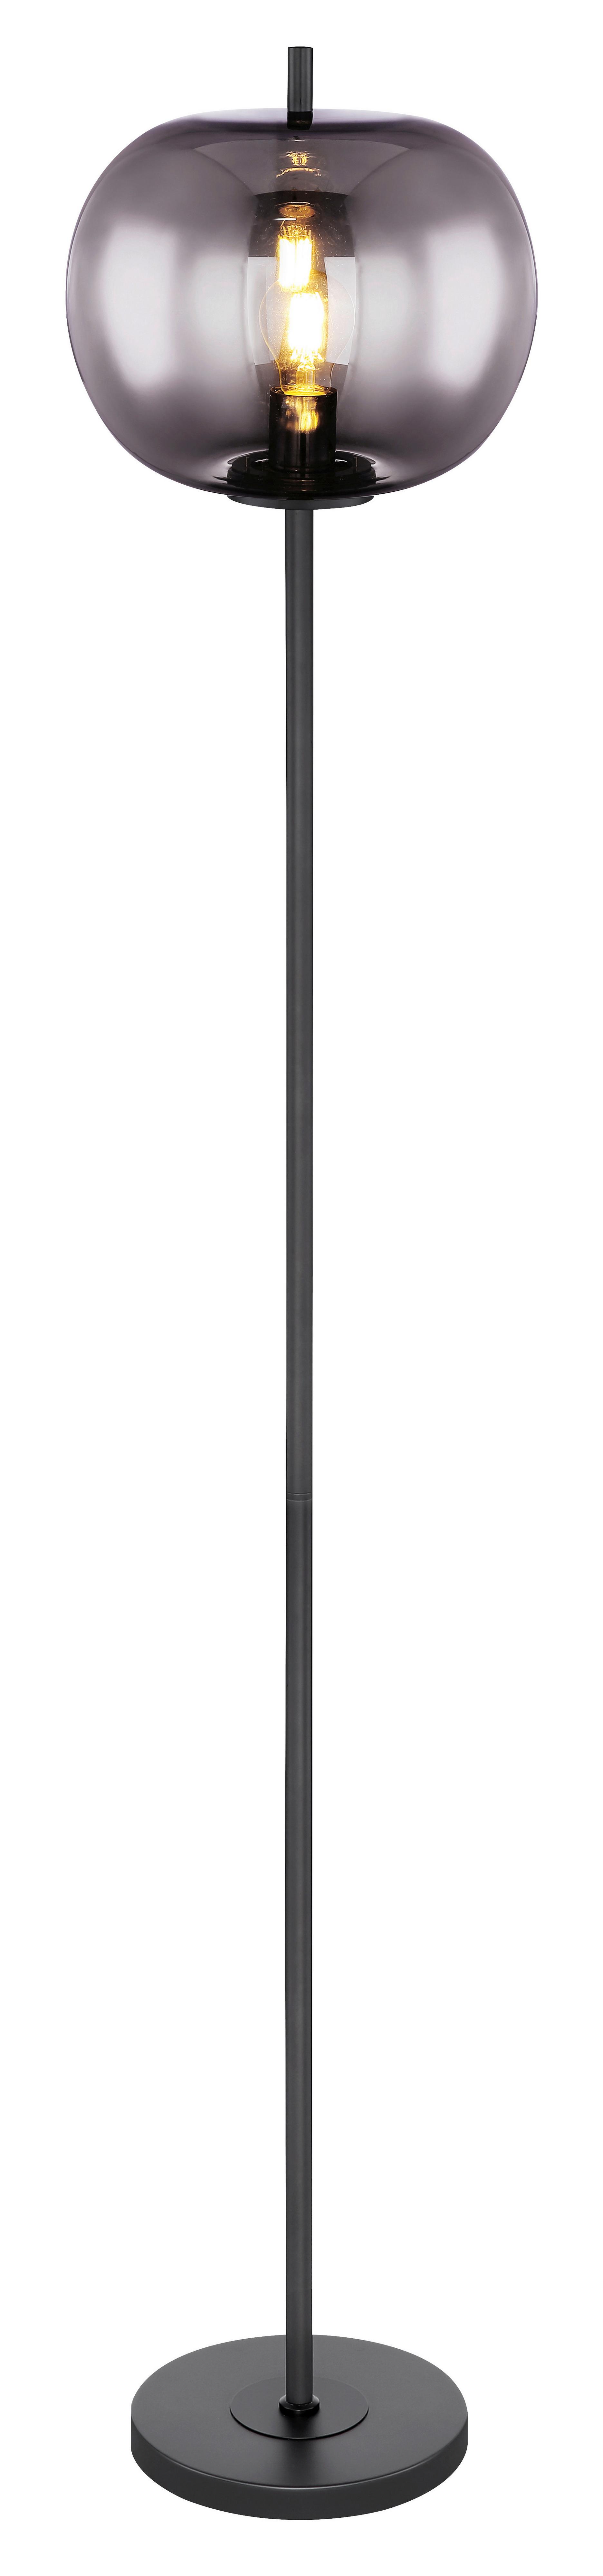 Stojacia Lampa V Čiernej Farbe,15345s - čierna/sivá, Design, kov/sklo (30/160cm) - Globo